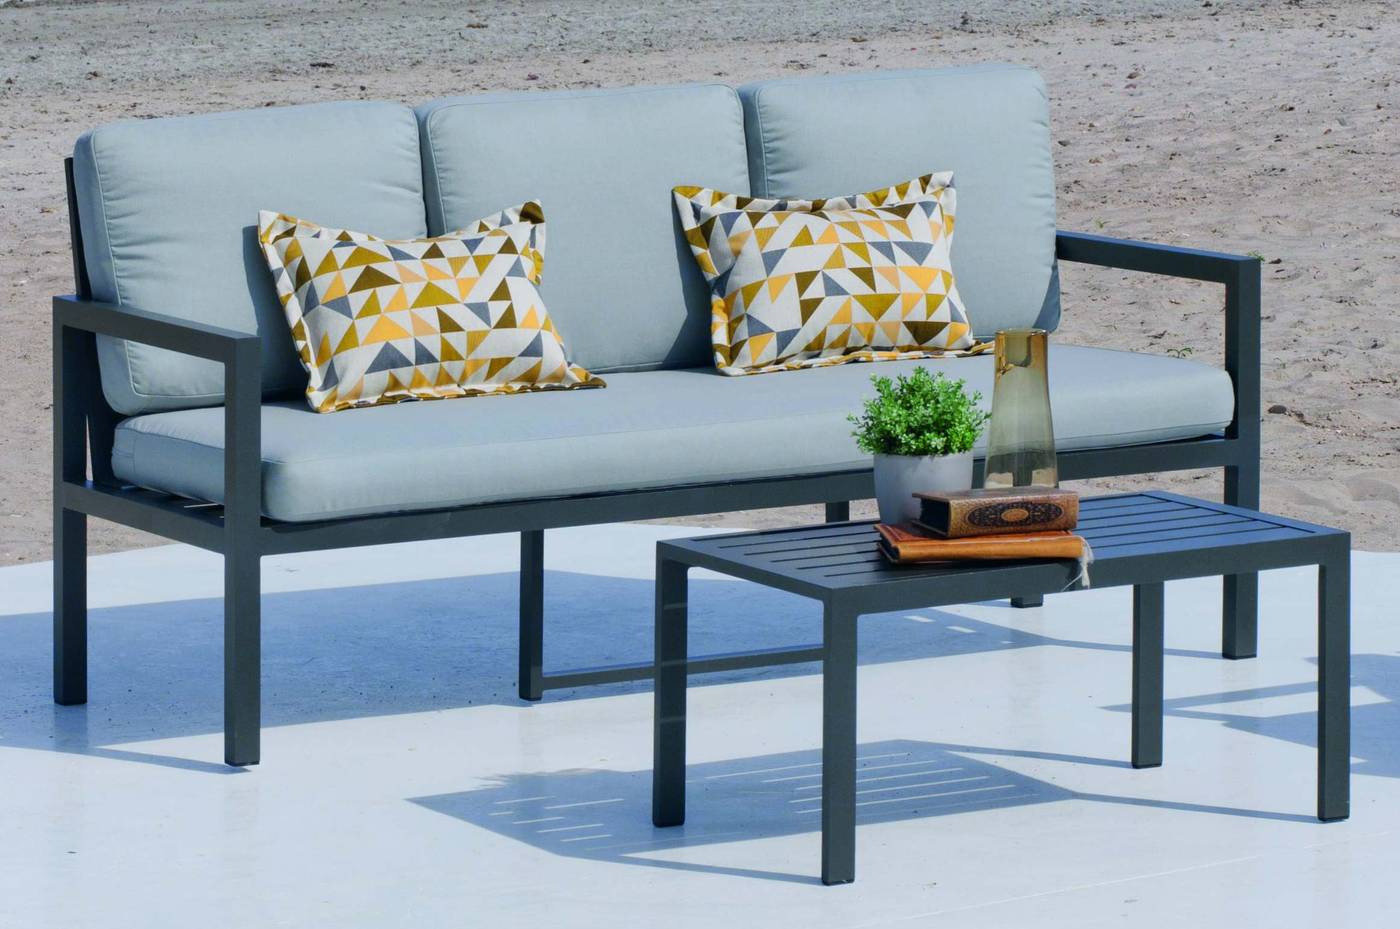 Set Aluminio Luxe Mandalay-8 - Conjunto aluminio: 1 sofá de 3 plazas + 2 sillones + 1 mesa de centro + cojines. Estructura aluminio de color blanco o antracita.